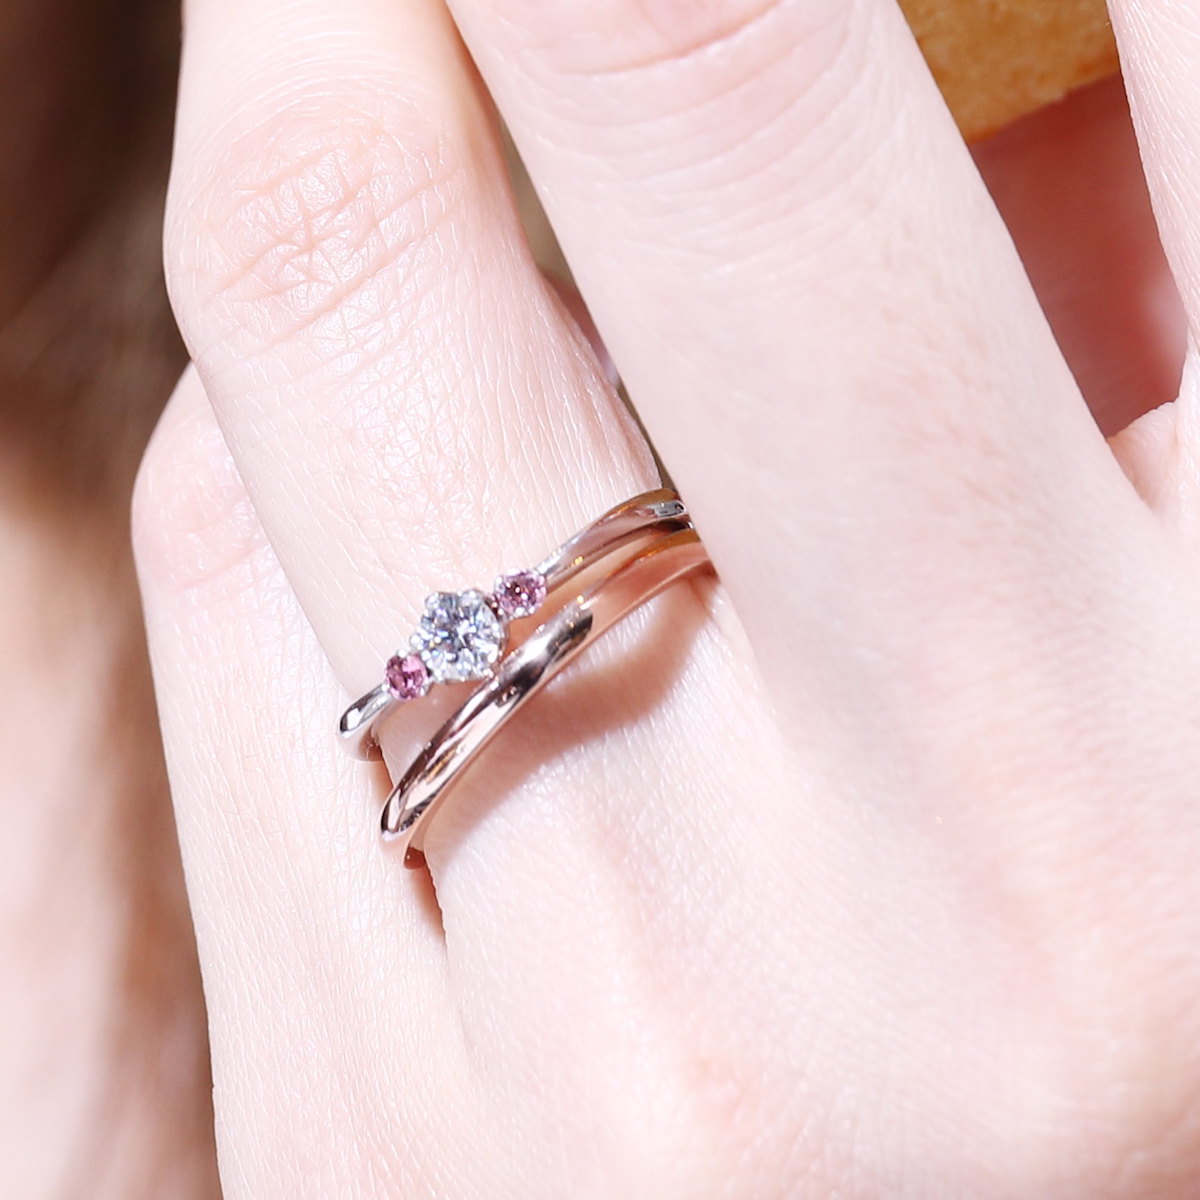 ピンクゴールドの結婚指輪 特徴や選び方を解説 結婚指輪を手作りするなら工房スミス